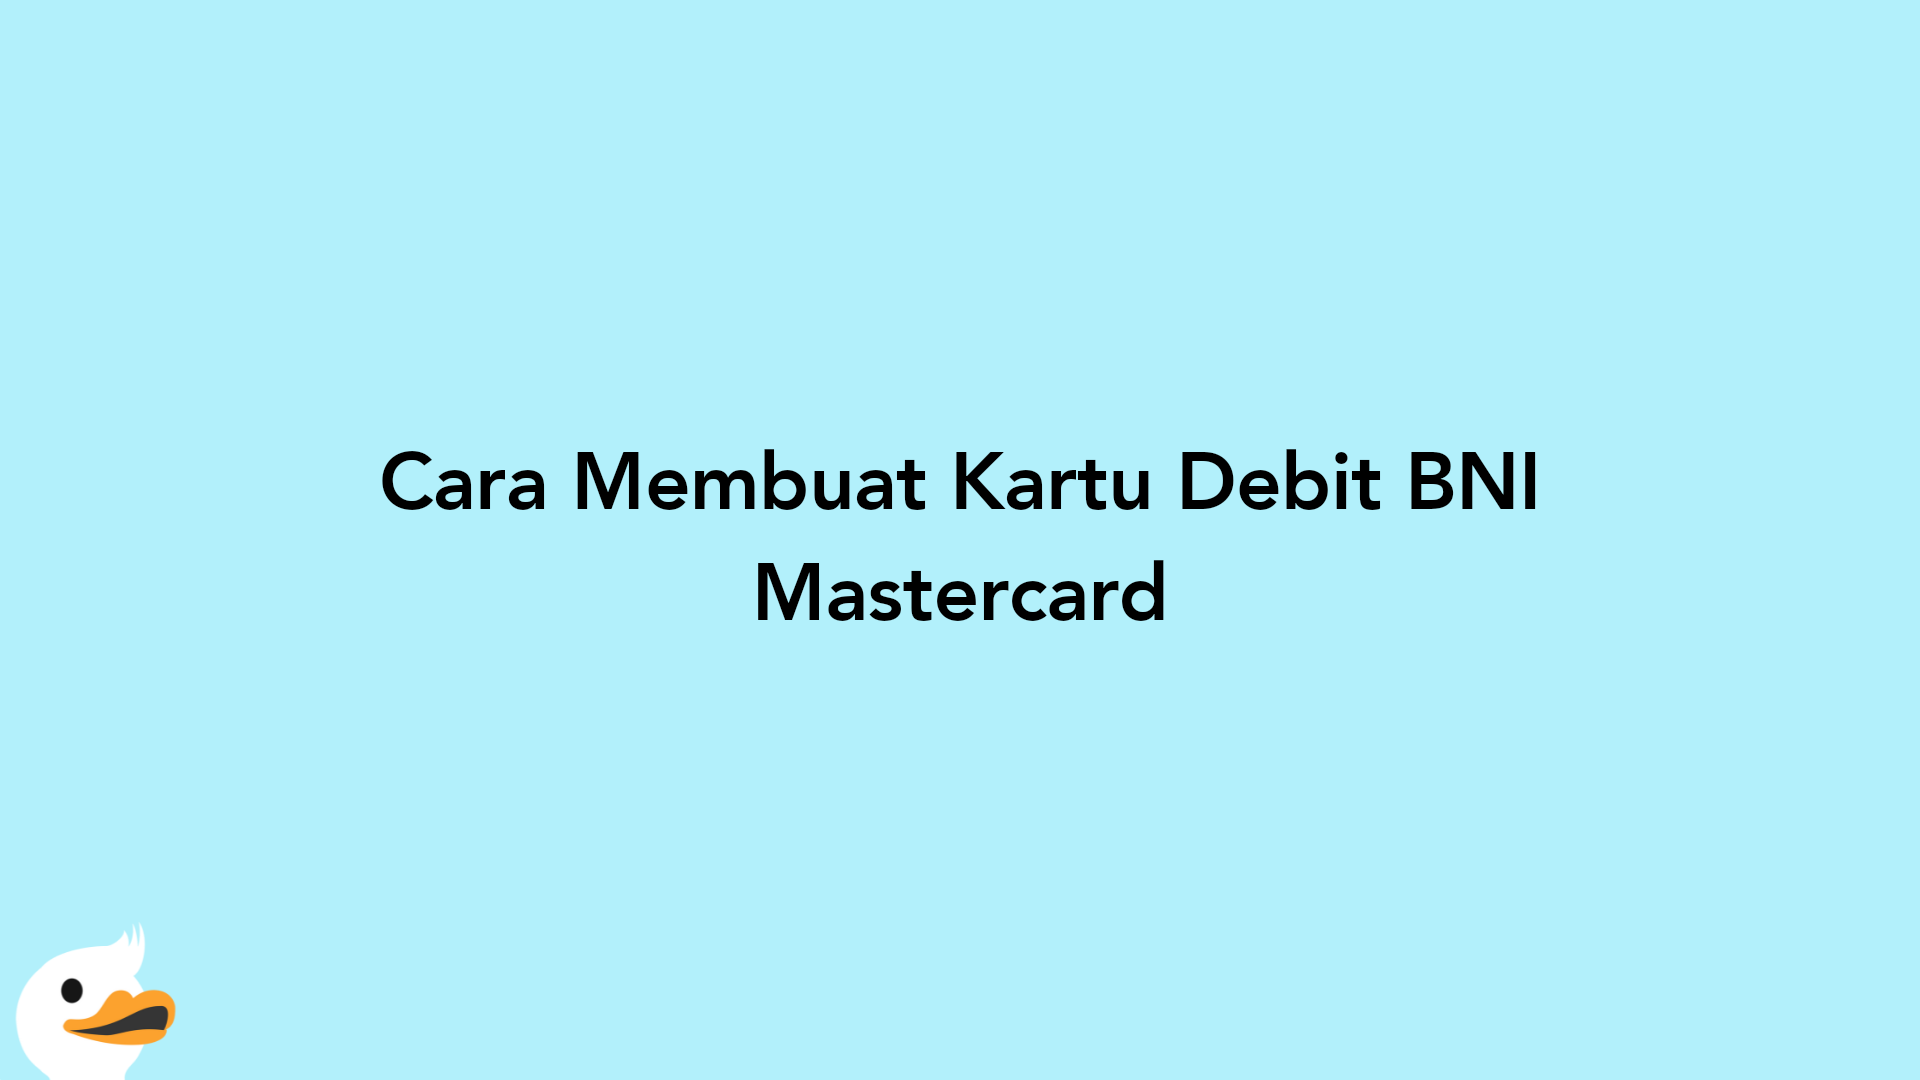 Cara Membuat Kartu Debit BNI Mastercard